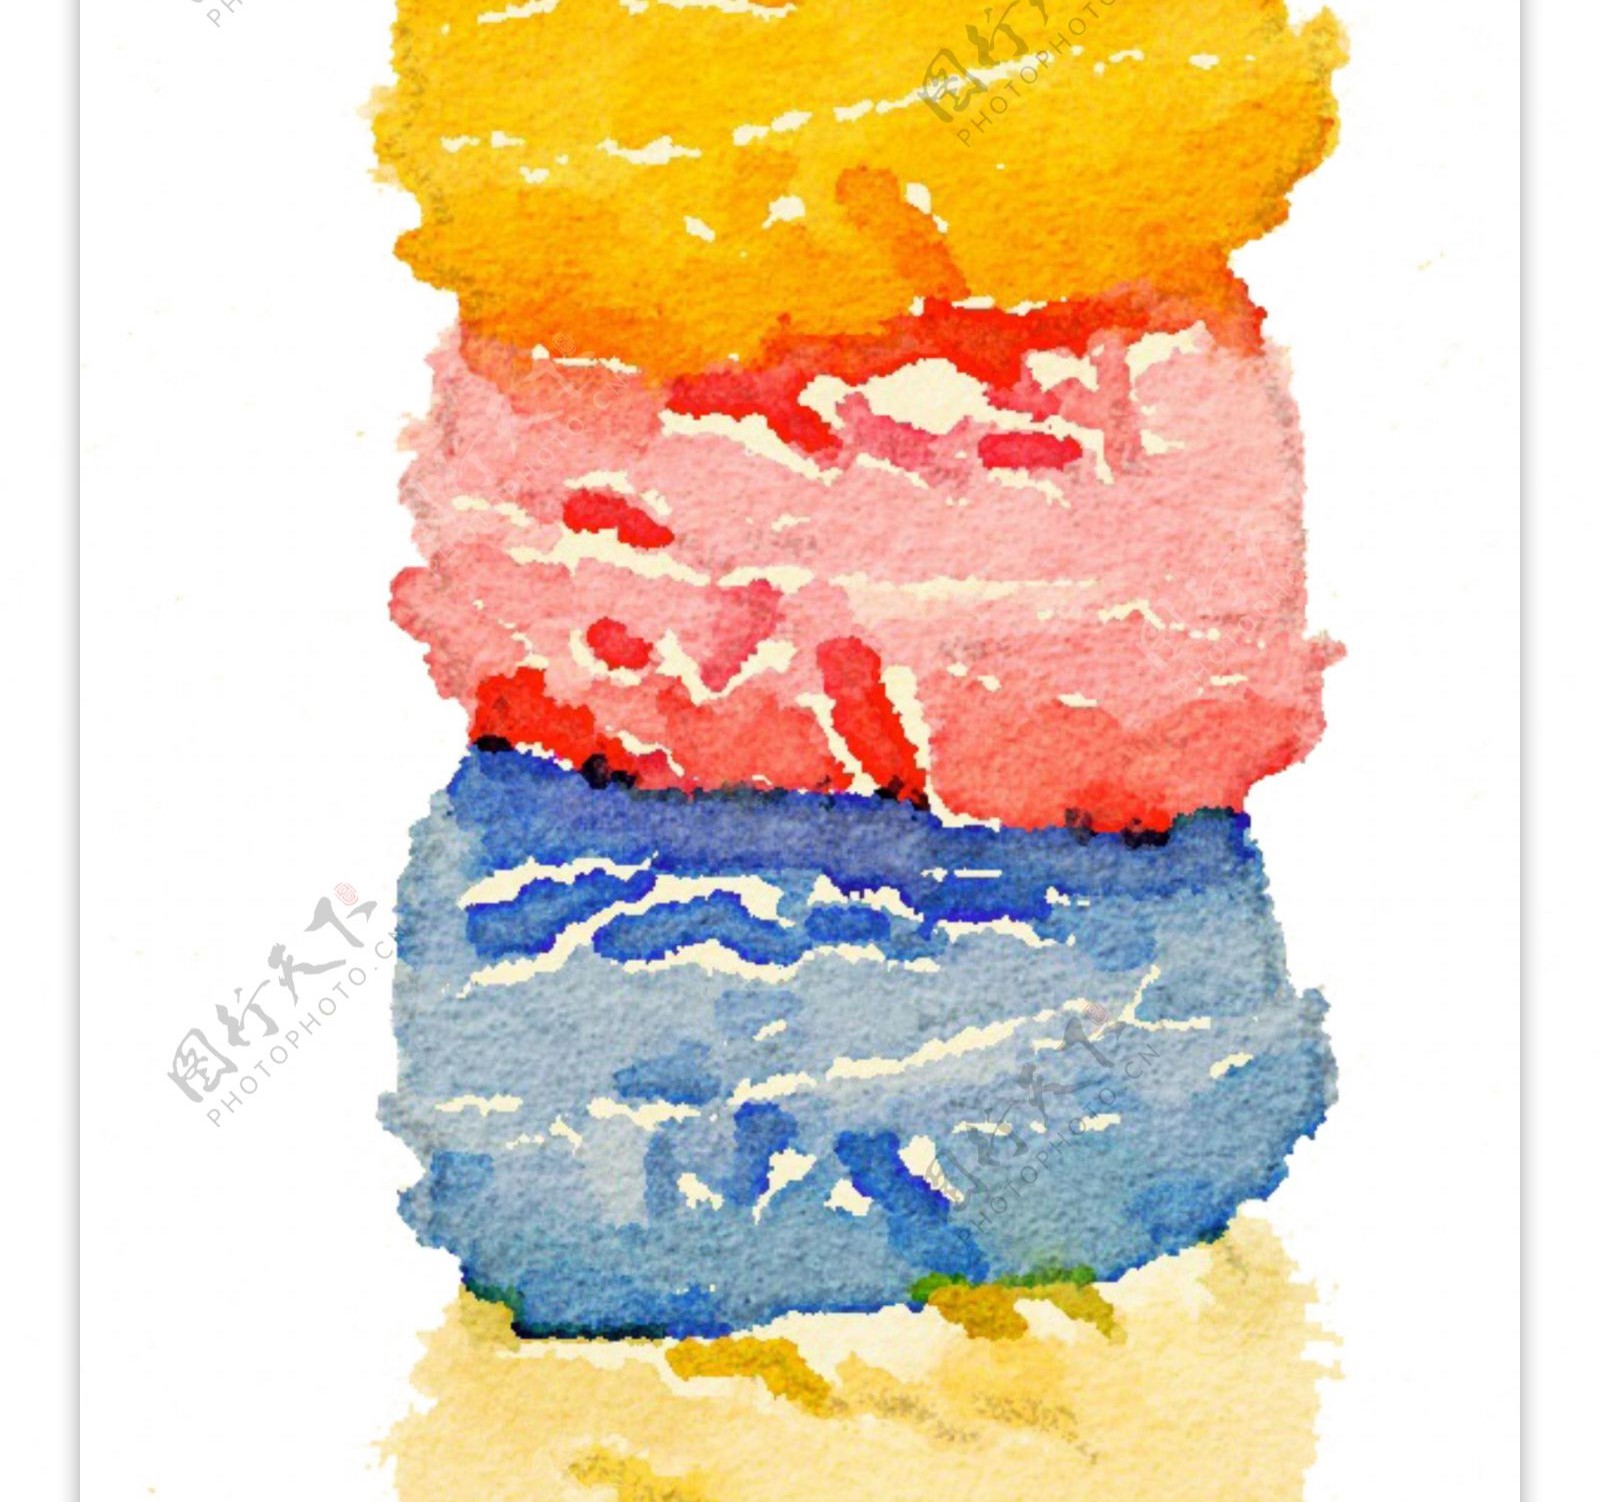 夏天元素水彩手绘清新风格甜筒冰激凌